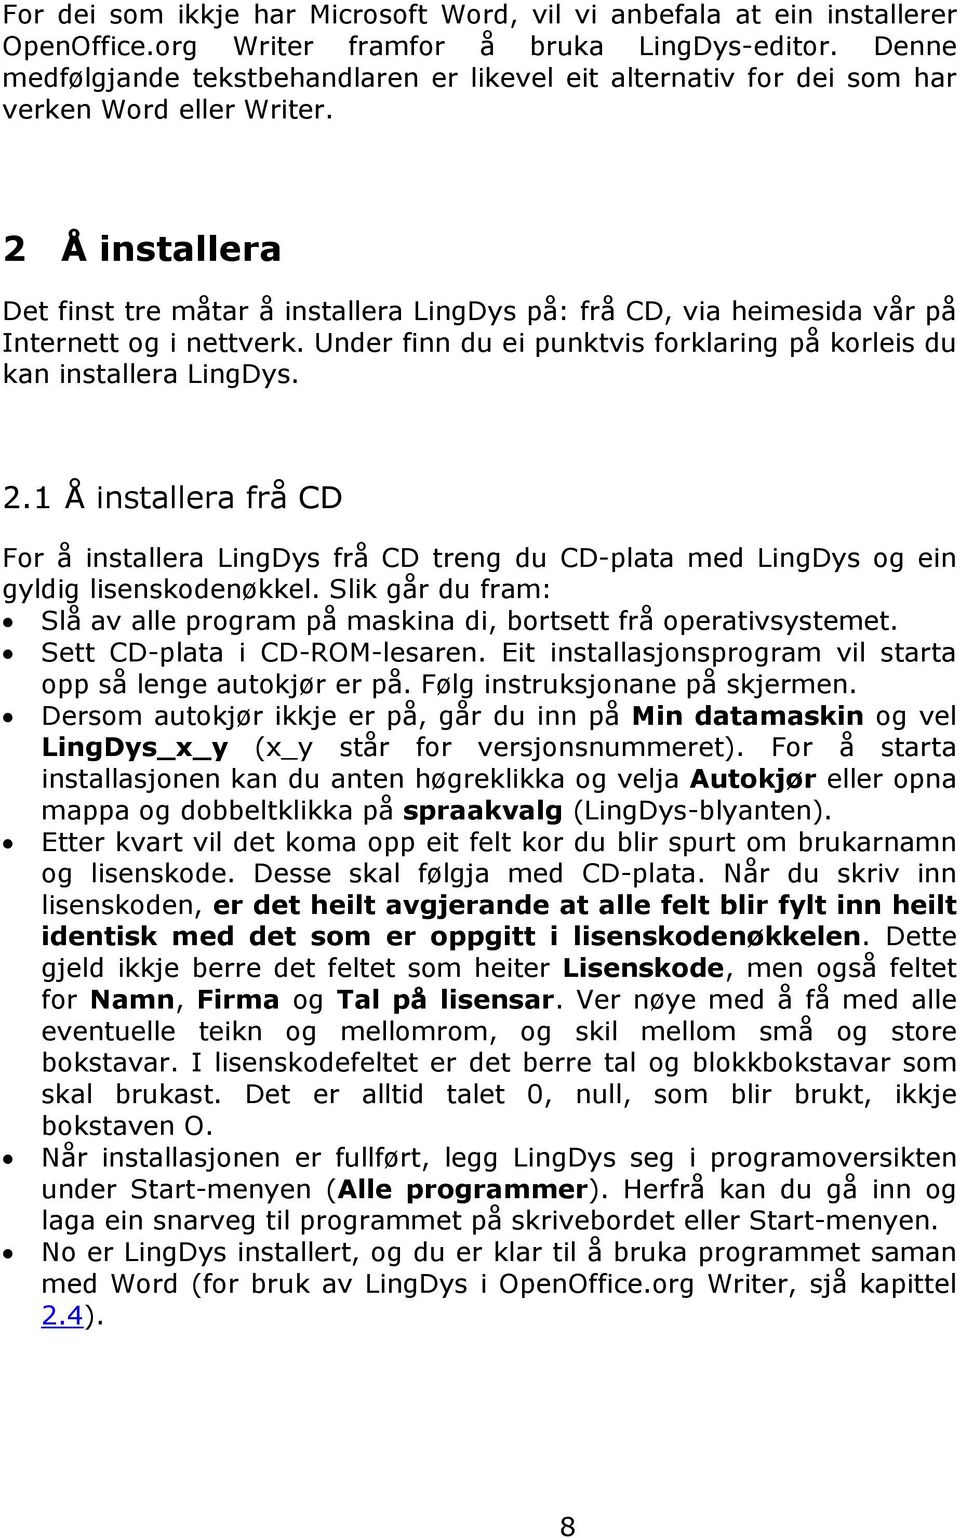 2 Å installera Det finst tre måtar å installera LingDys på: frå CD, via heimesida vår på Internett og i nettverk. Under finn du ei punktvis forklaring på korleis du kan installera LingDys. 2.